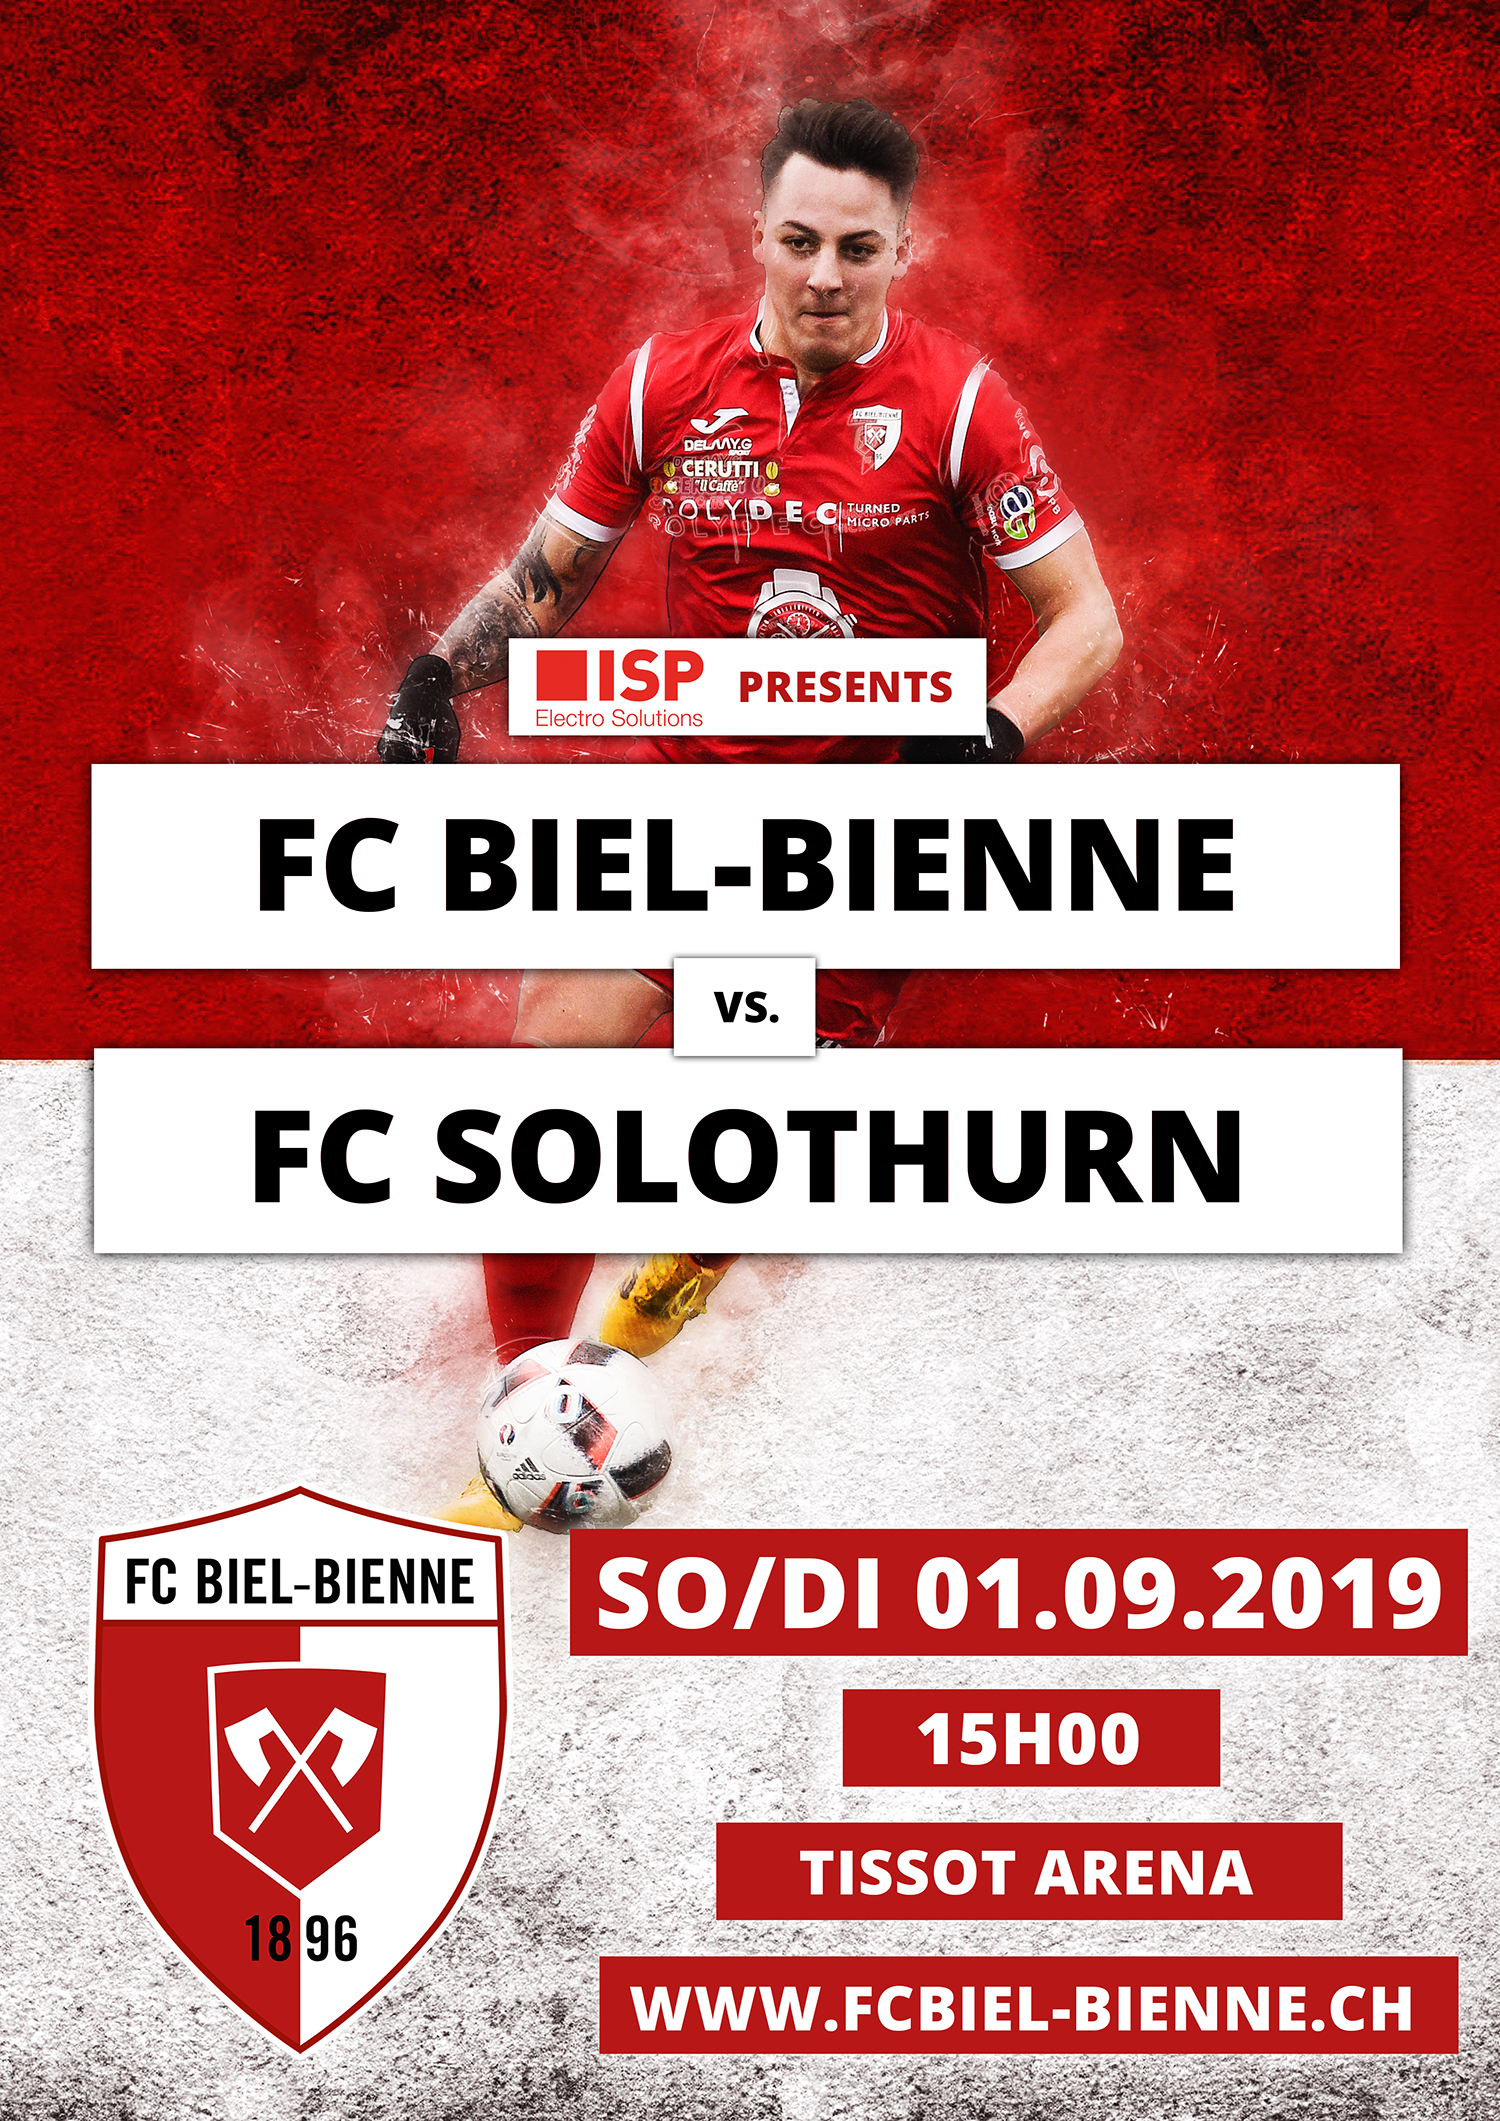 FC Biel-Bienne vs. FC Solothurn